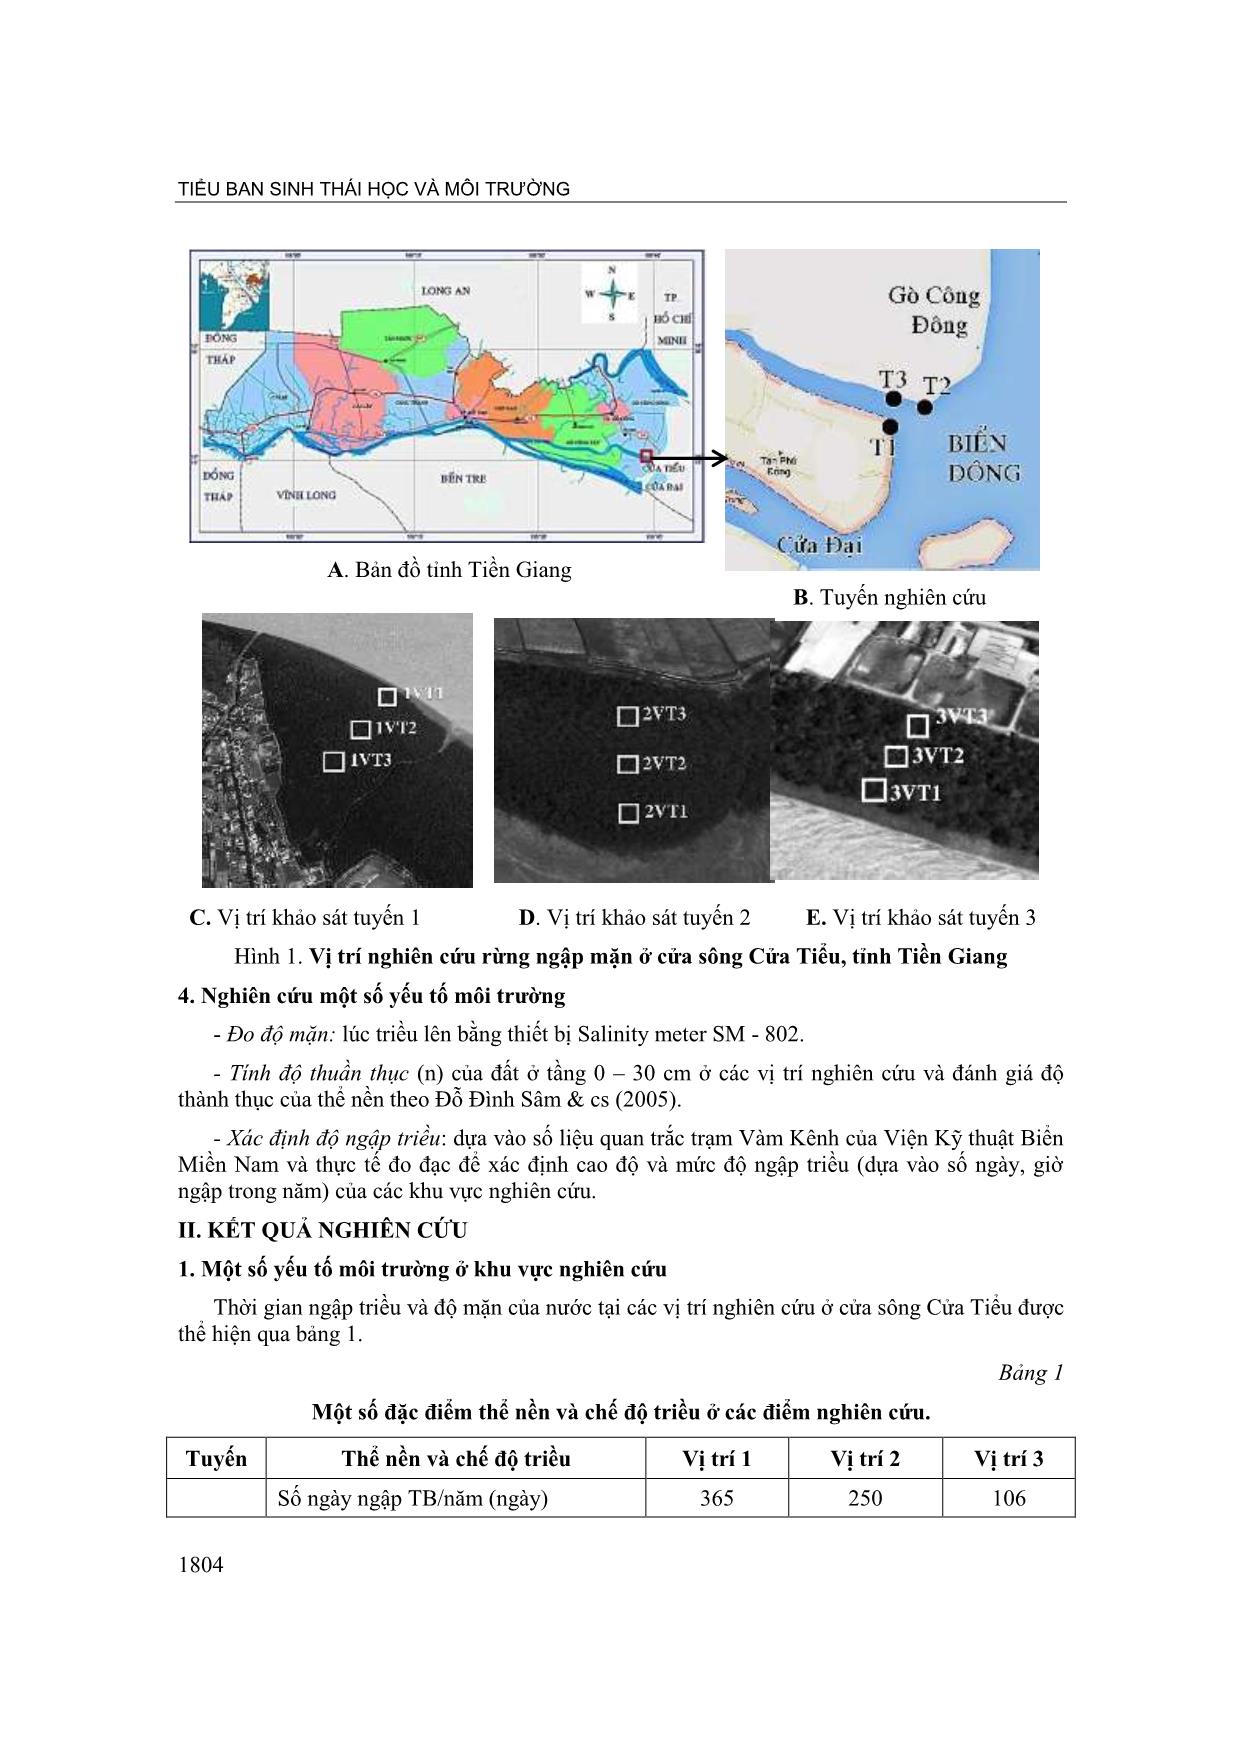 Nghiên cứu cấu tröc rừng ngập mặn ở cửa sông Cửa Tiểu, tỉnh Tiền Giang trang 2